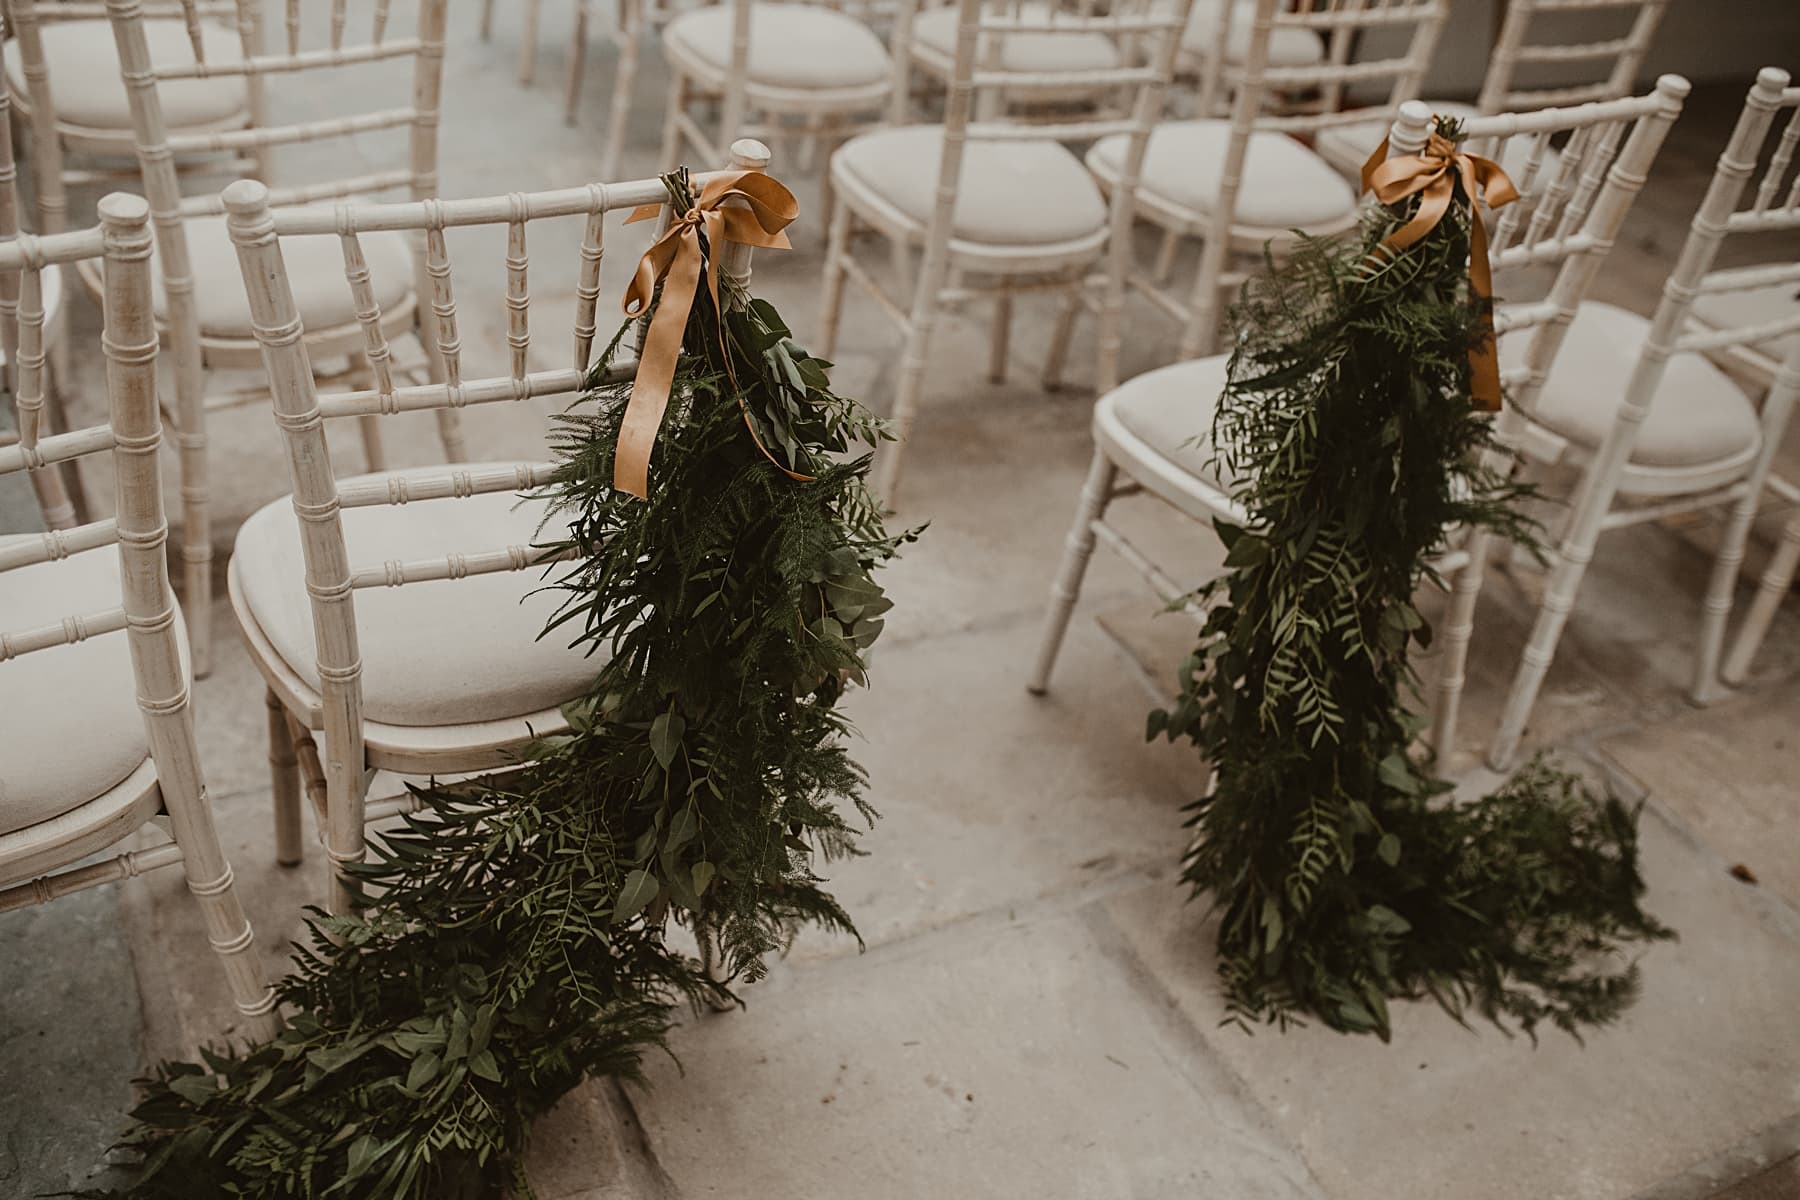 Foliage wedding chair decor